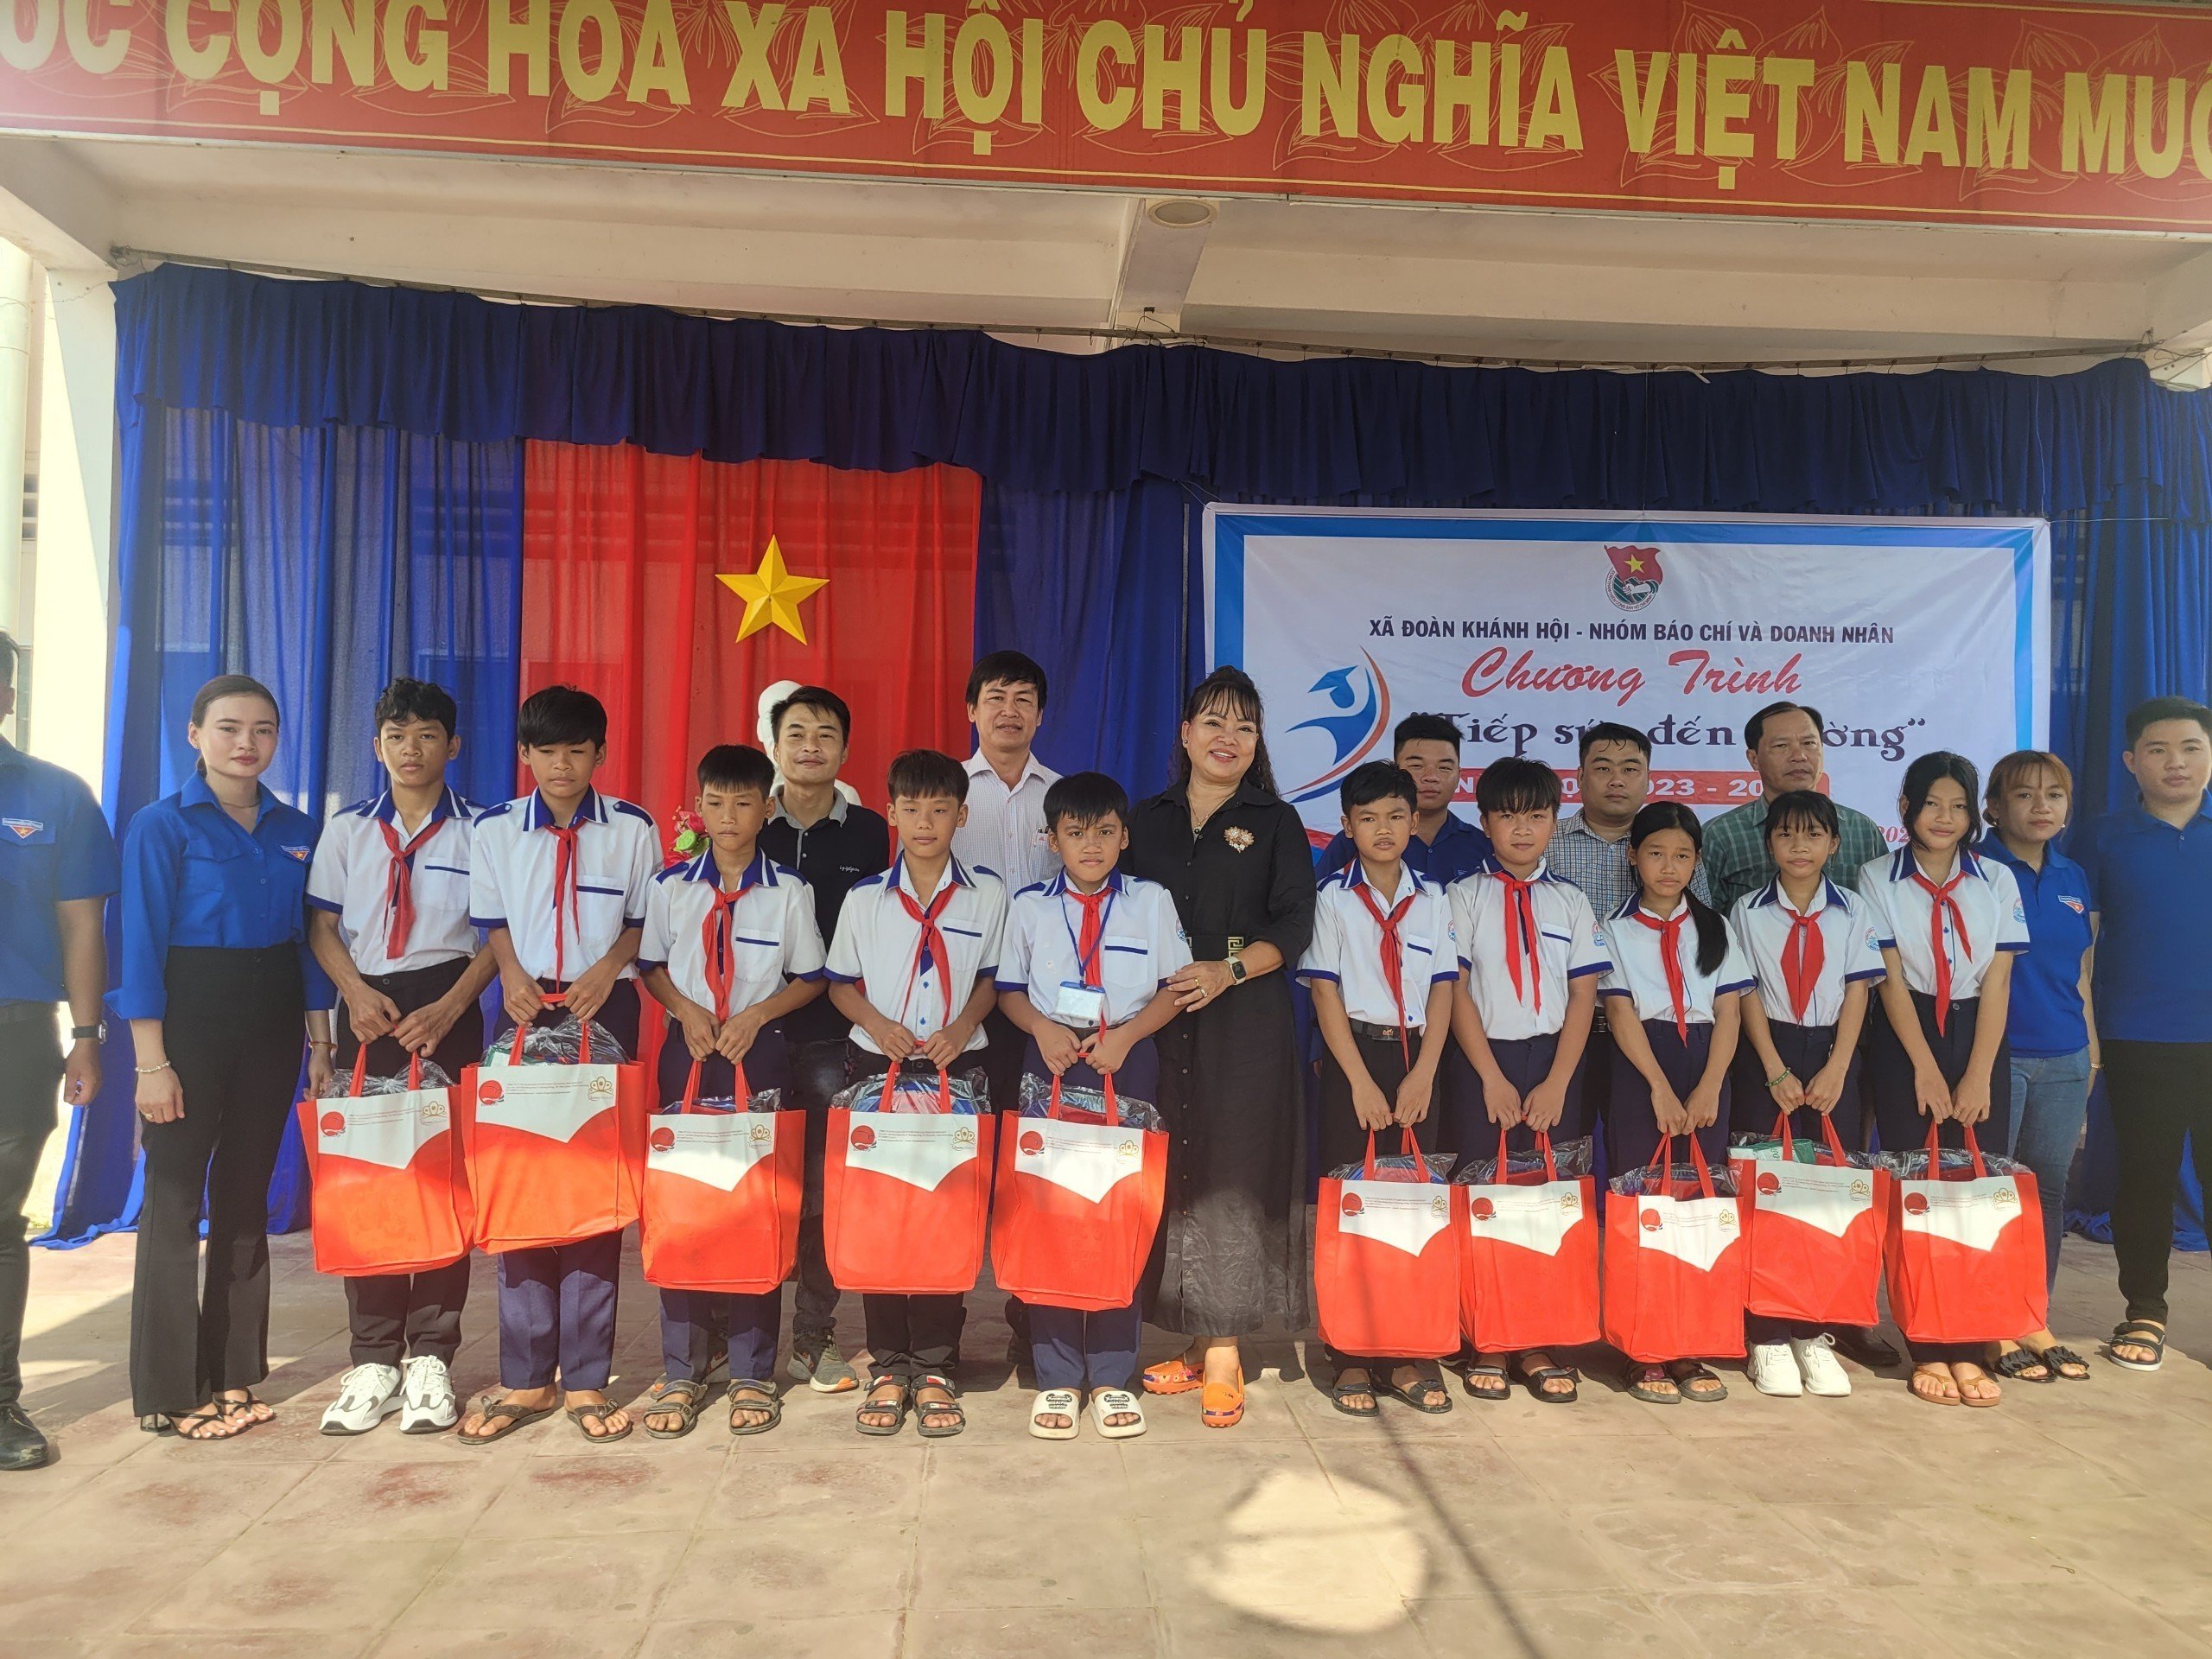 "Tiếp sức đến trường" là hoạt động thường niên của nhóm Báo chí & Doanh nhân TP Hồ Chí Minh hướng đến các em học sinh vùng xa có hoàn cảnh khó khăn